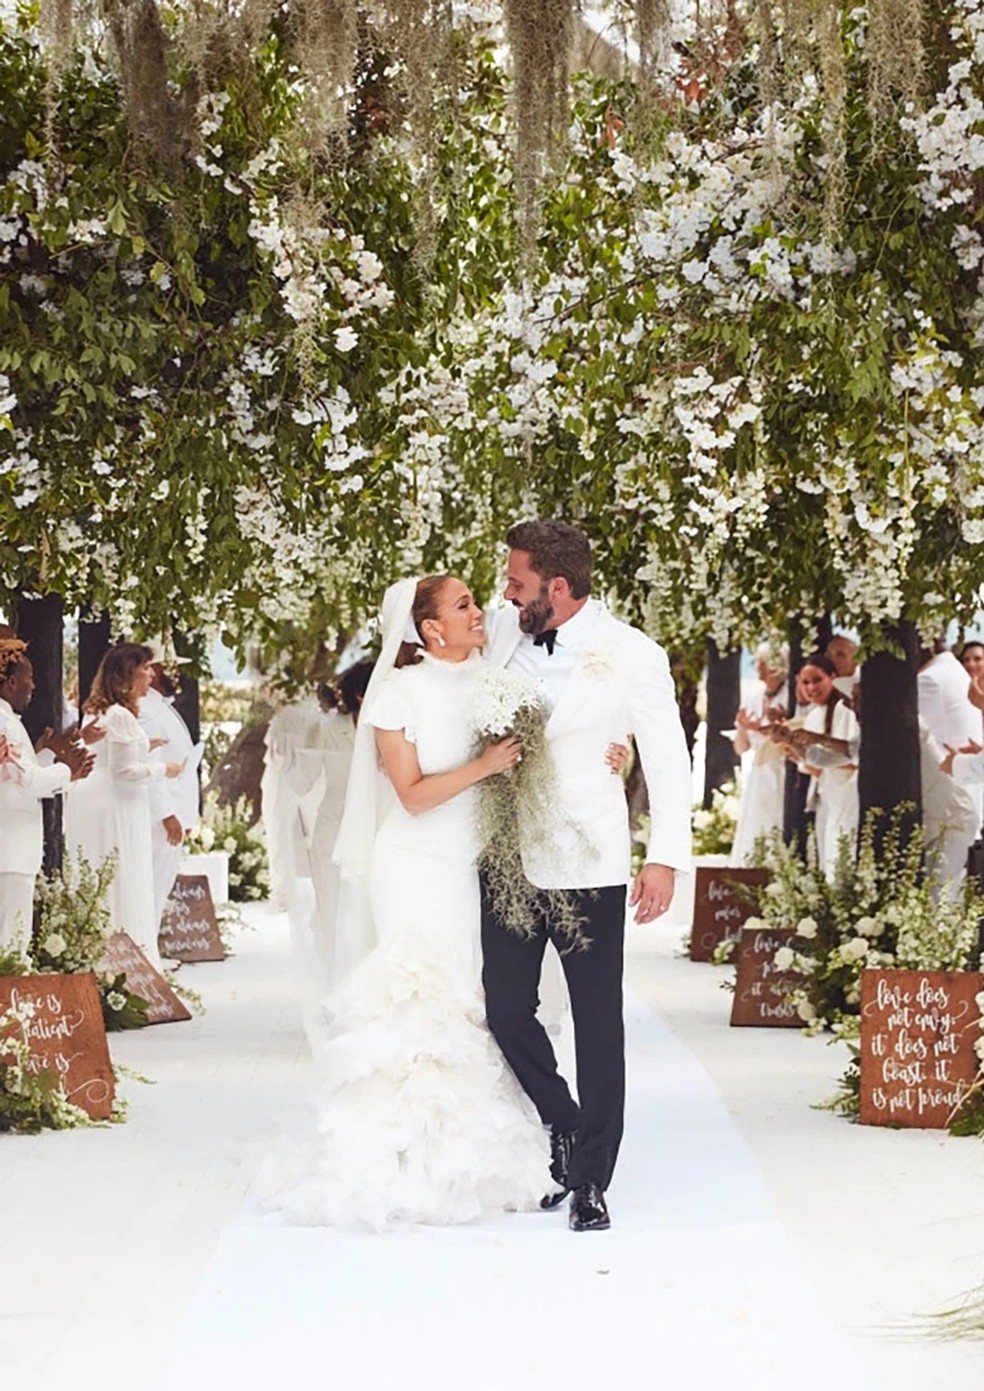 Jennifer Lopez compartilha fotos inéditas de seu casamento com Ben Affleck — Foto: Instagram